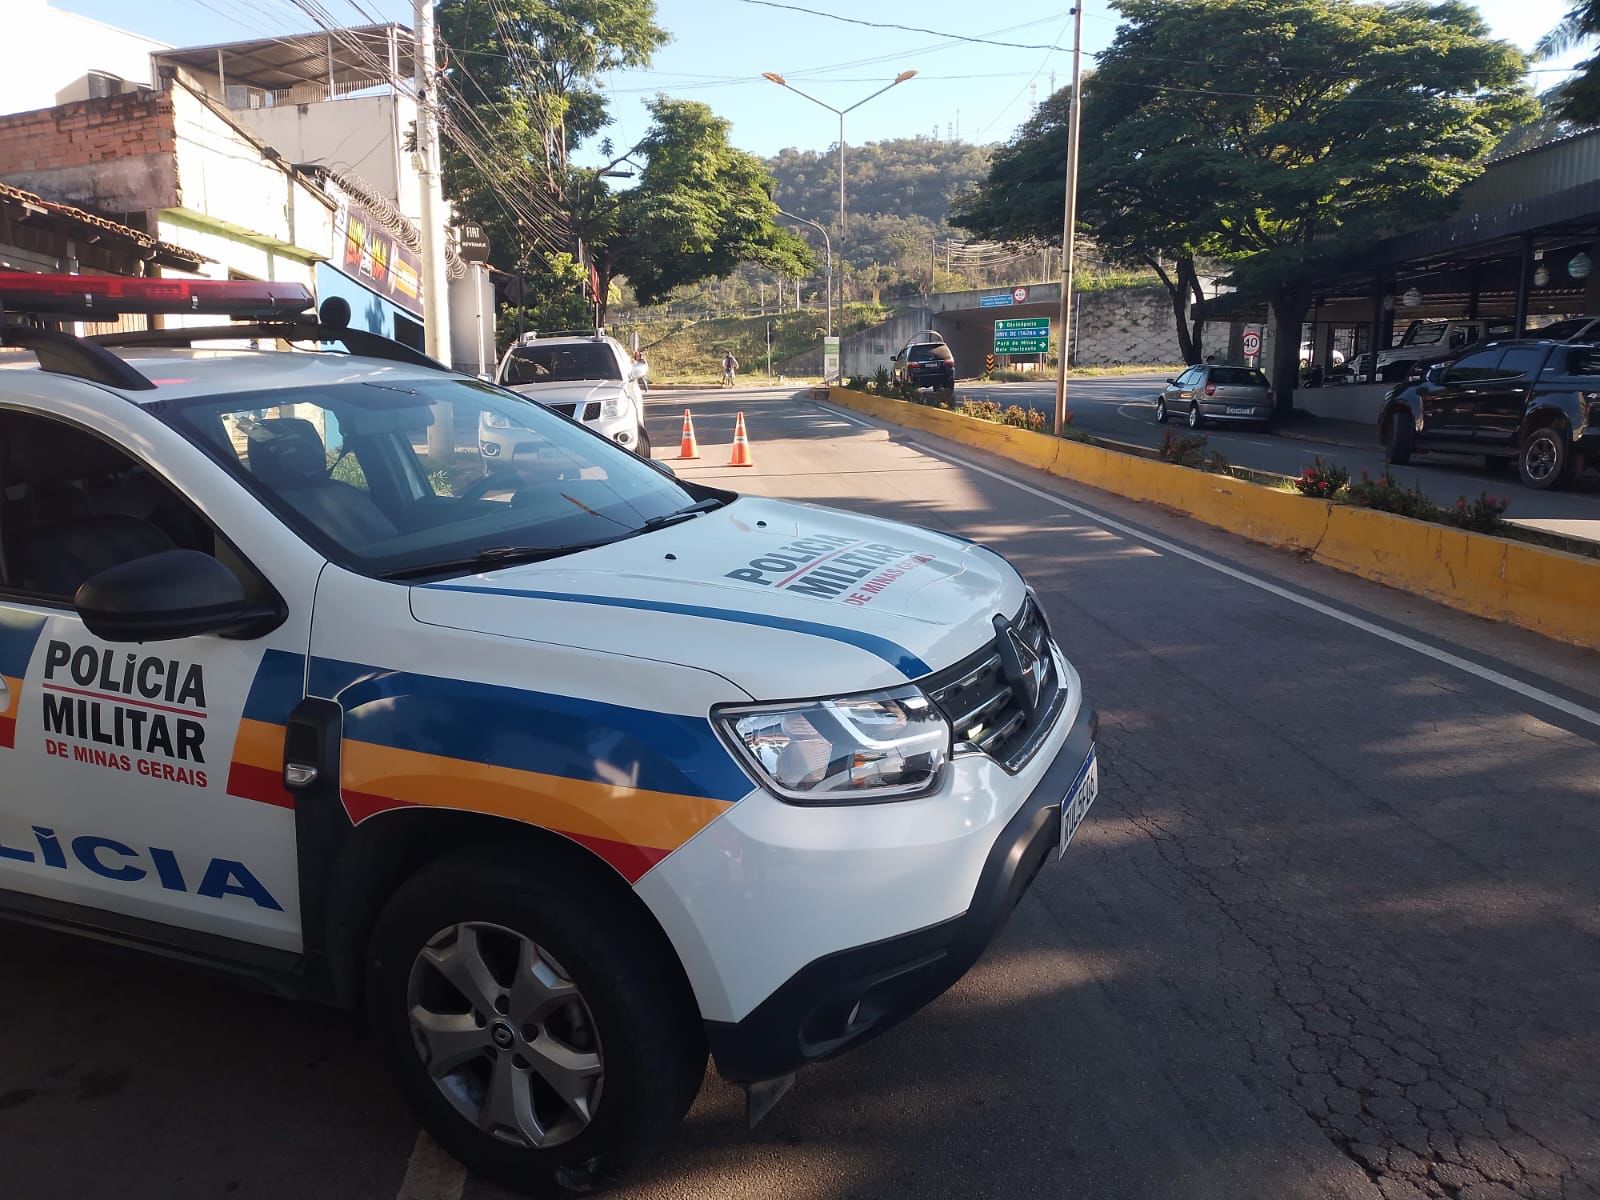 Convênio de fiscalização do trânsito em Itaúna expirou; Prefeitura e PM encaminham proposta de renovação